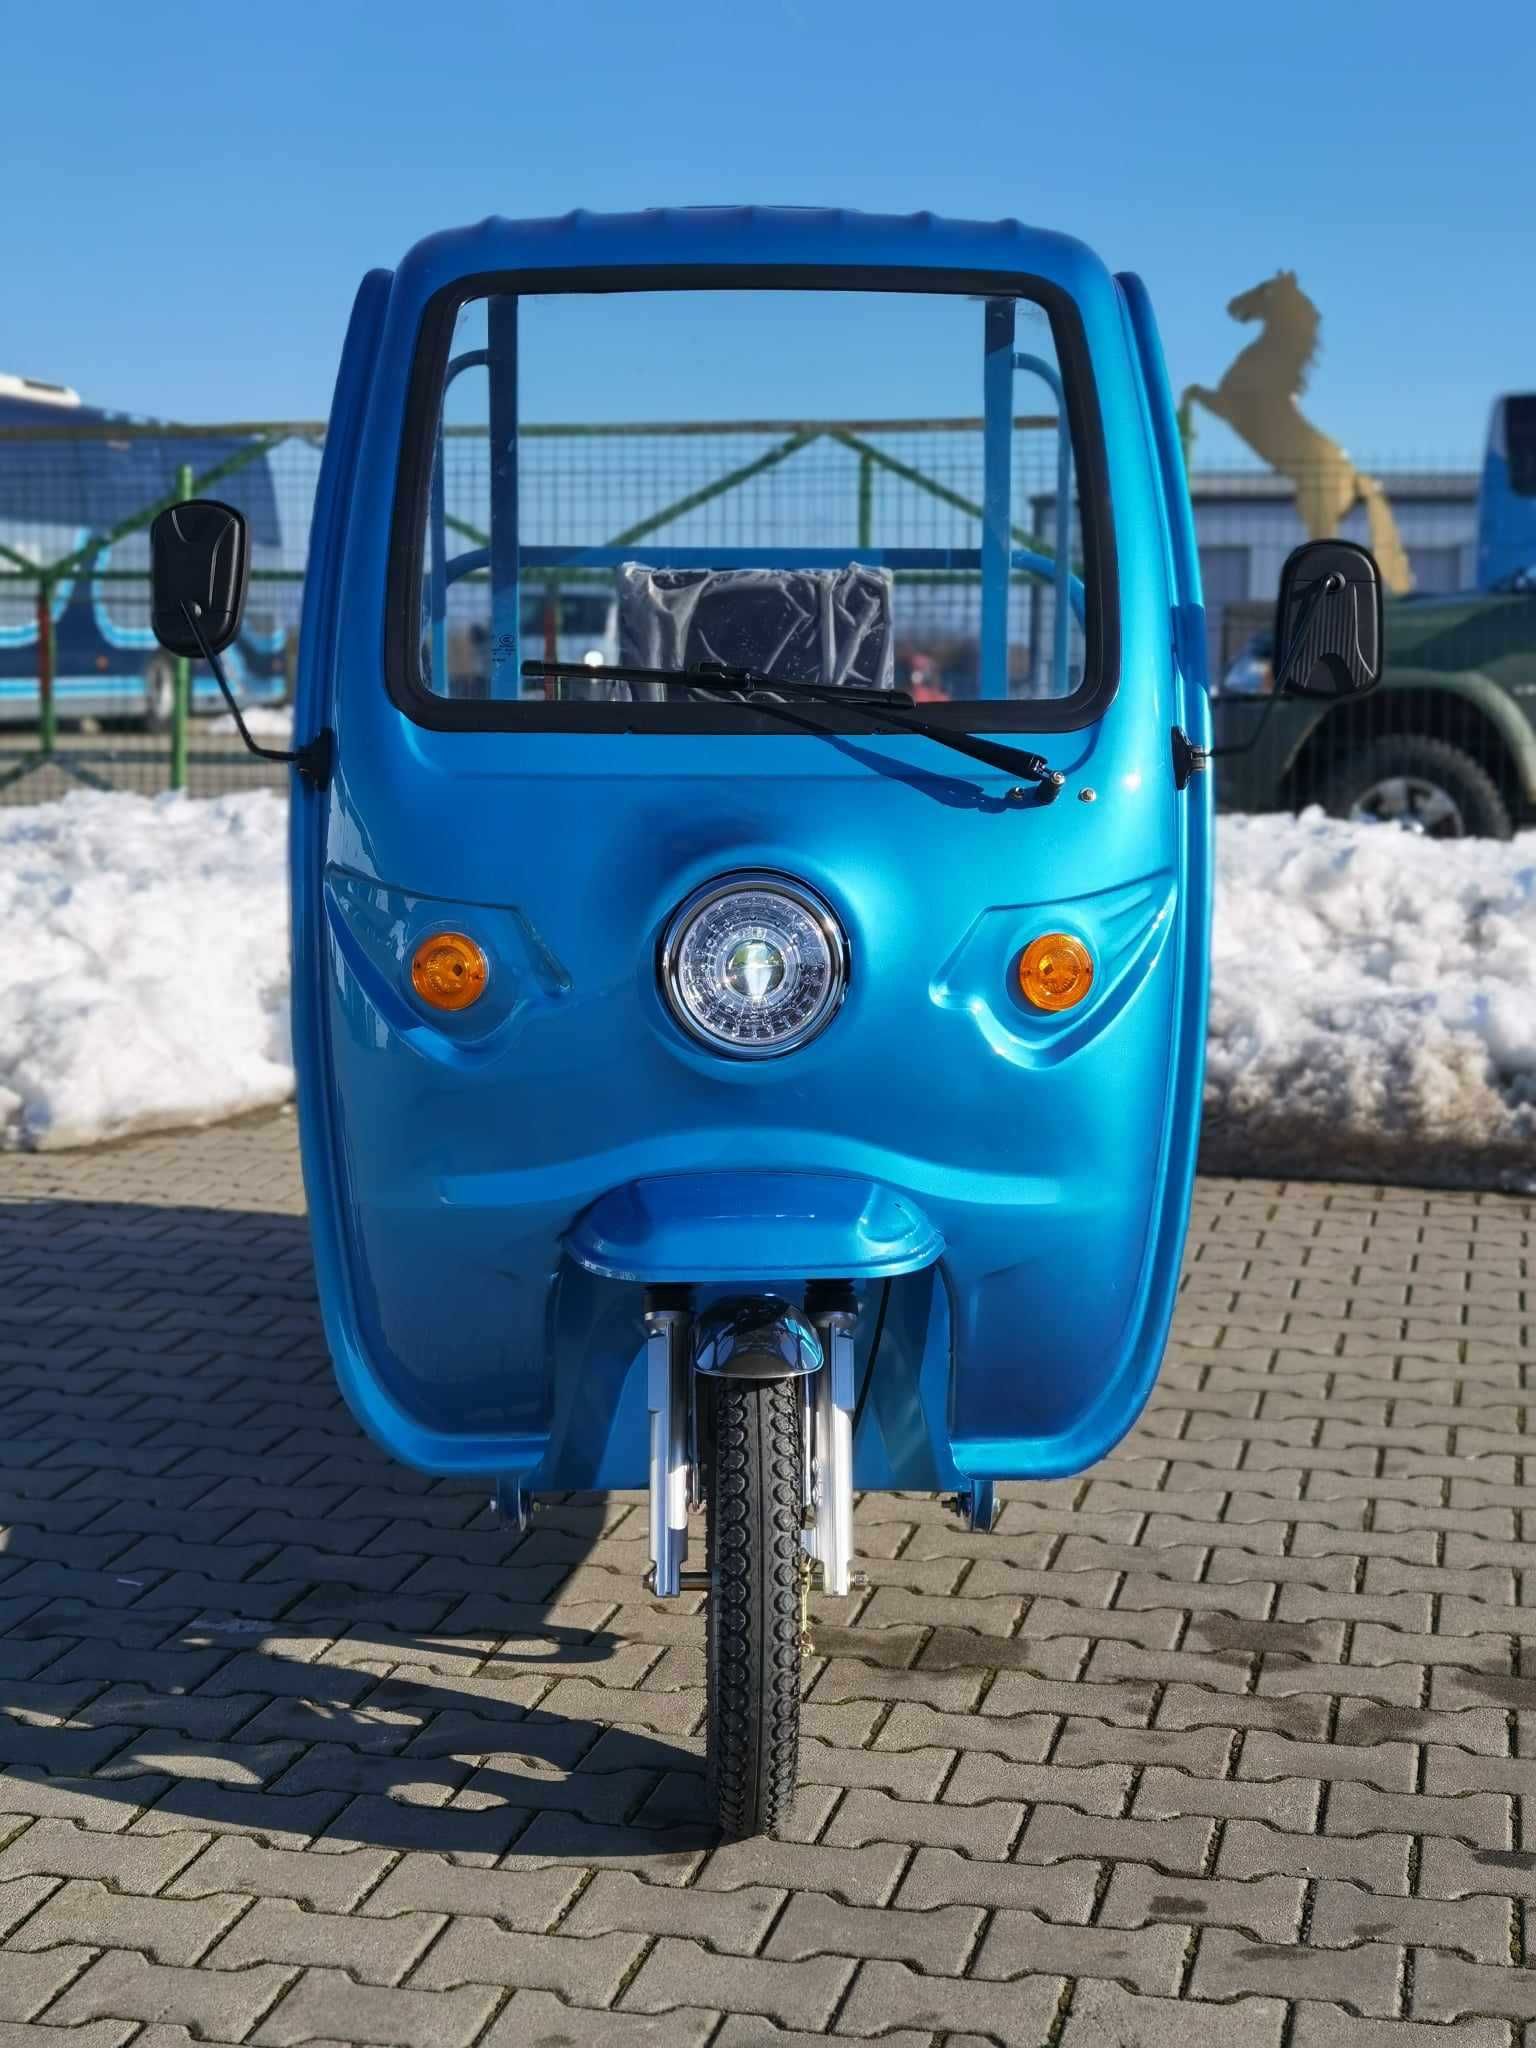 THOR STAR-PLUS albastru triciclu electric cu CIV,FARA PERMIS Agramix